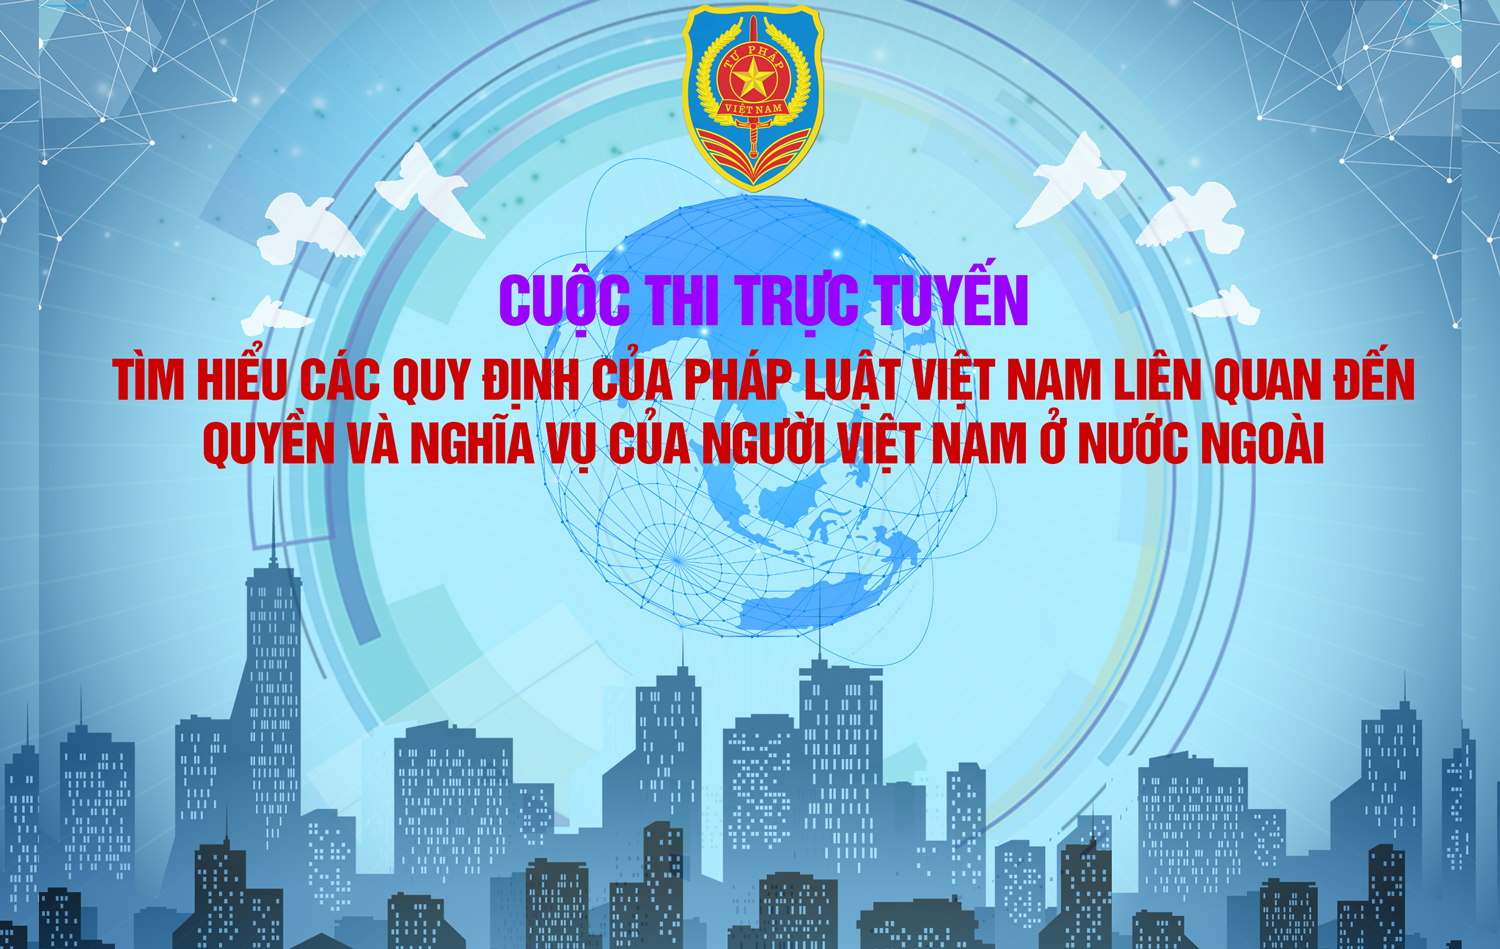 Cuộc thi "Tìm hiểu các quy định của pháp luật liên quan đến quyền và nghĩa vụ của người Việt Nam...